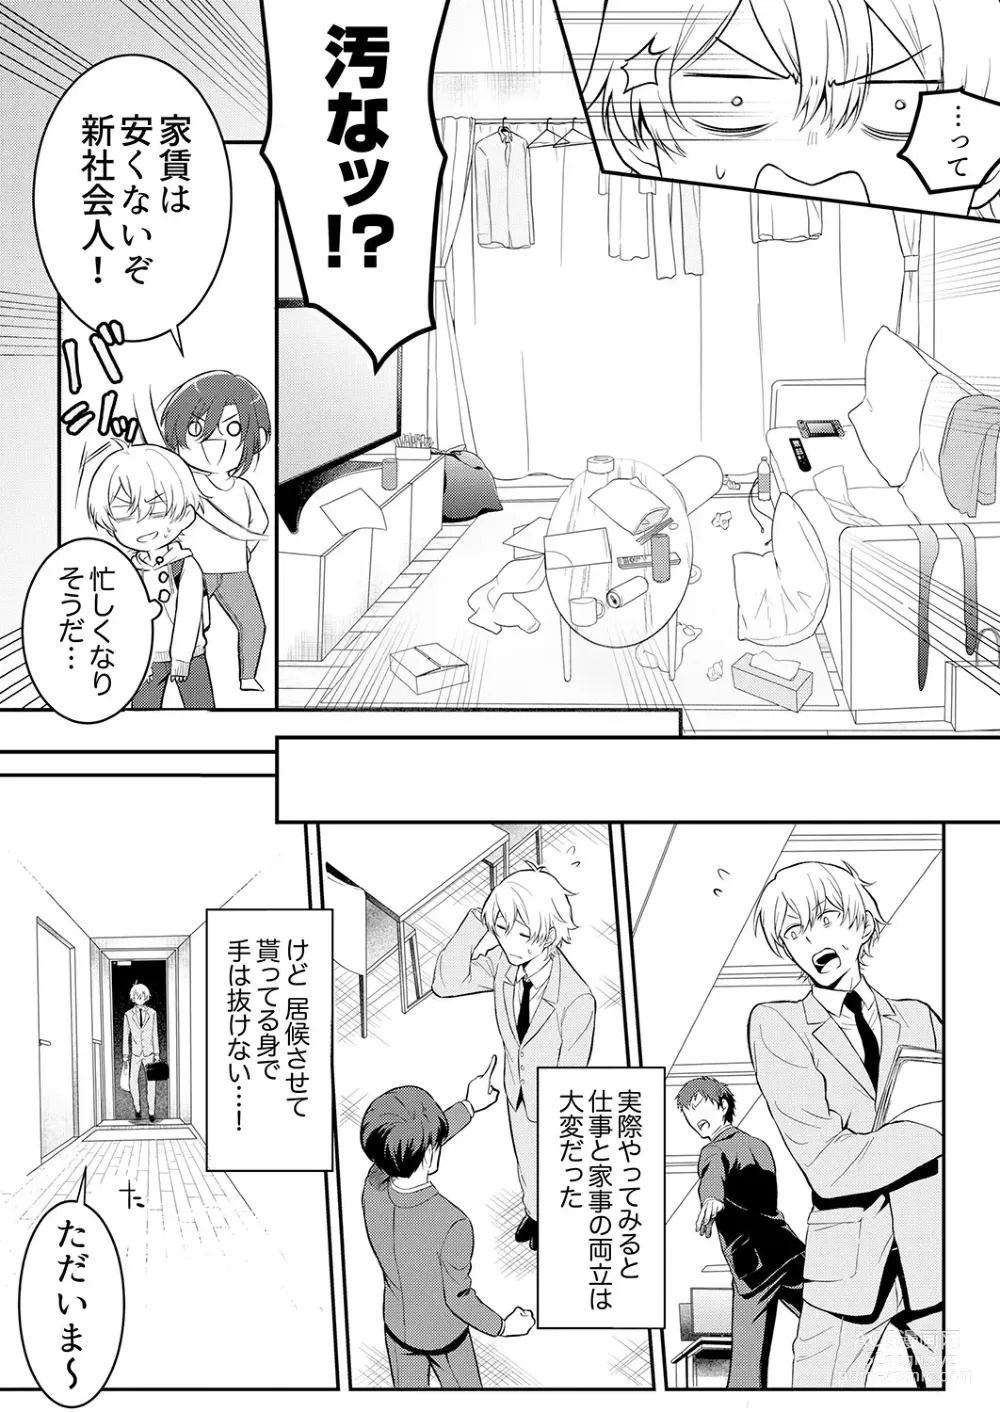 Page 4 of manga Hageshii SEX de Motokare o Wasuresasete ~ Yotta Furi shite Izanau Ane